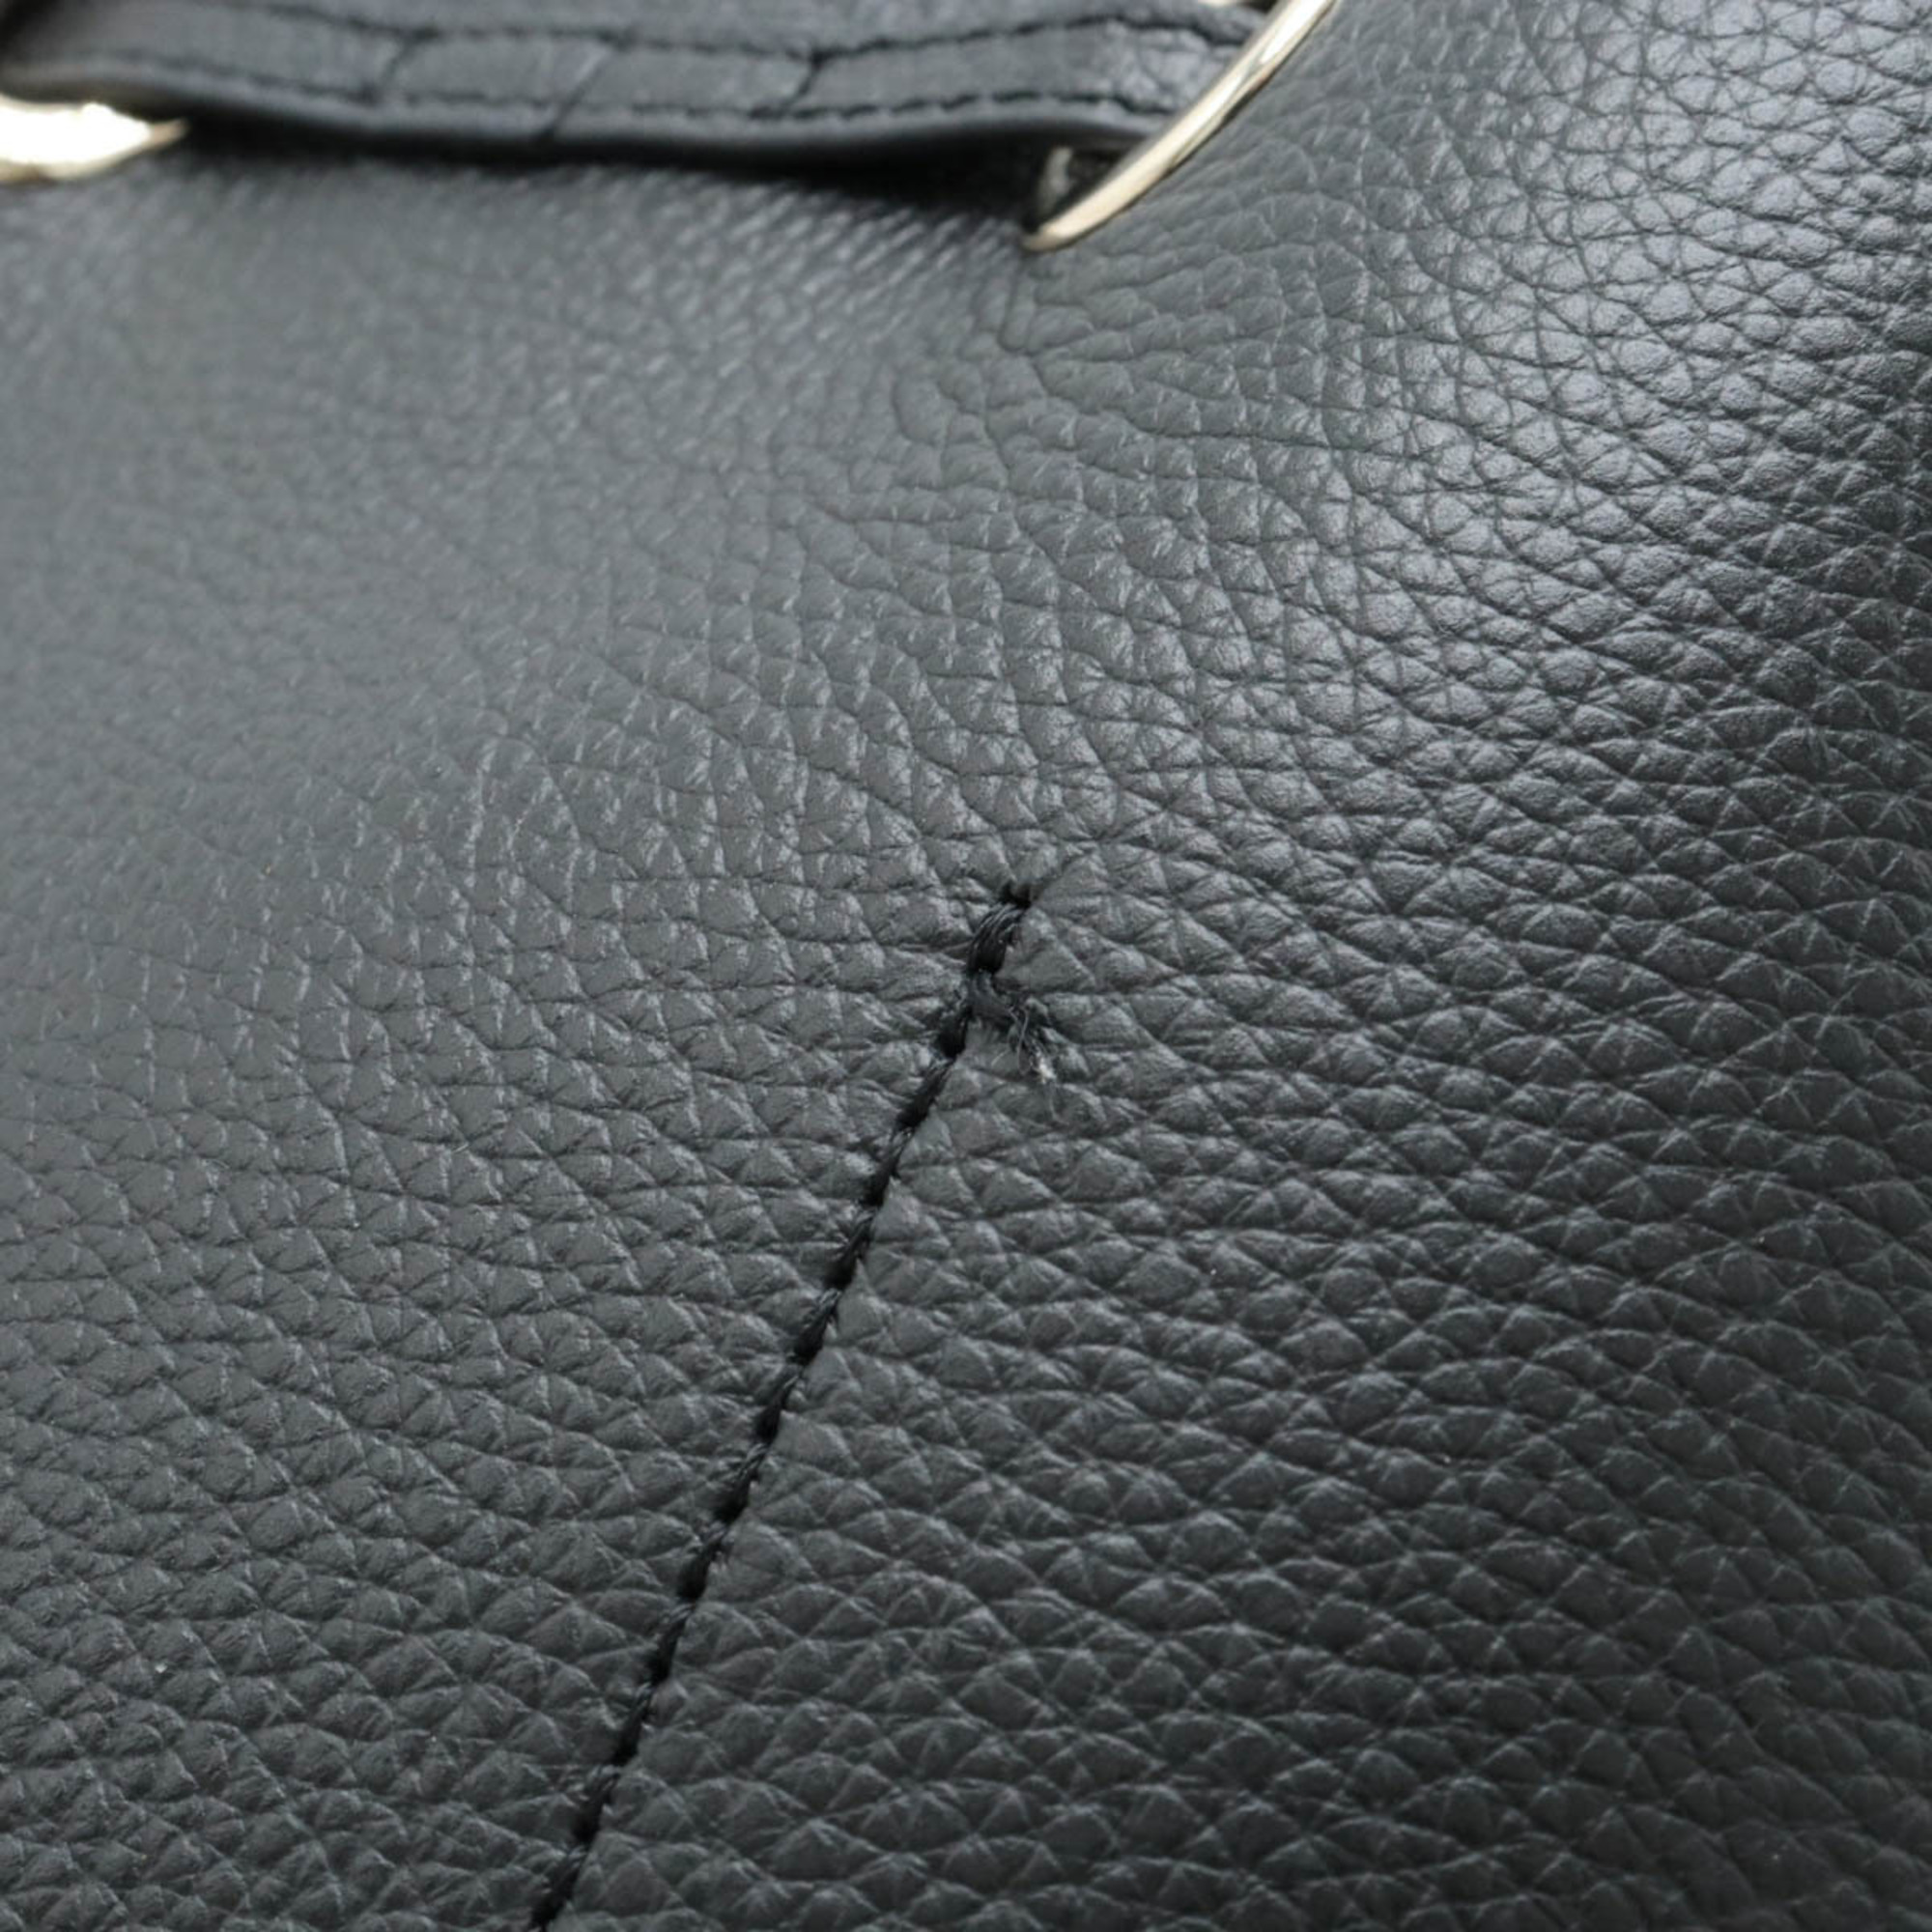 FURLA Costanza handbag shoulder bag in leather, black